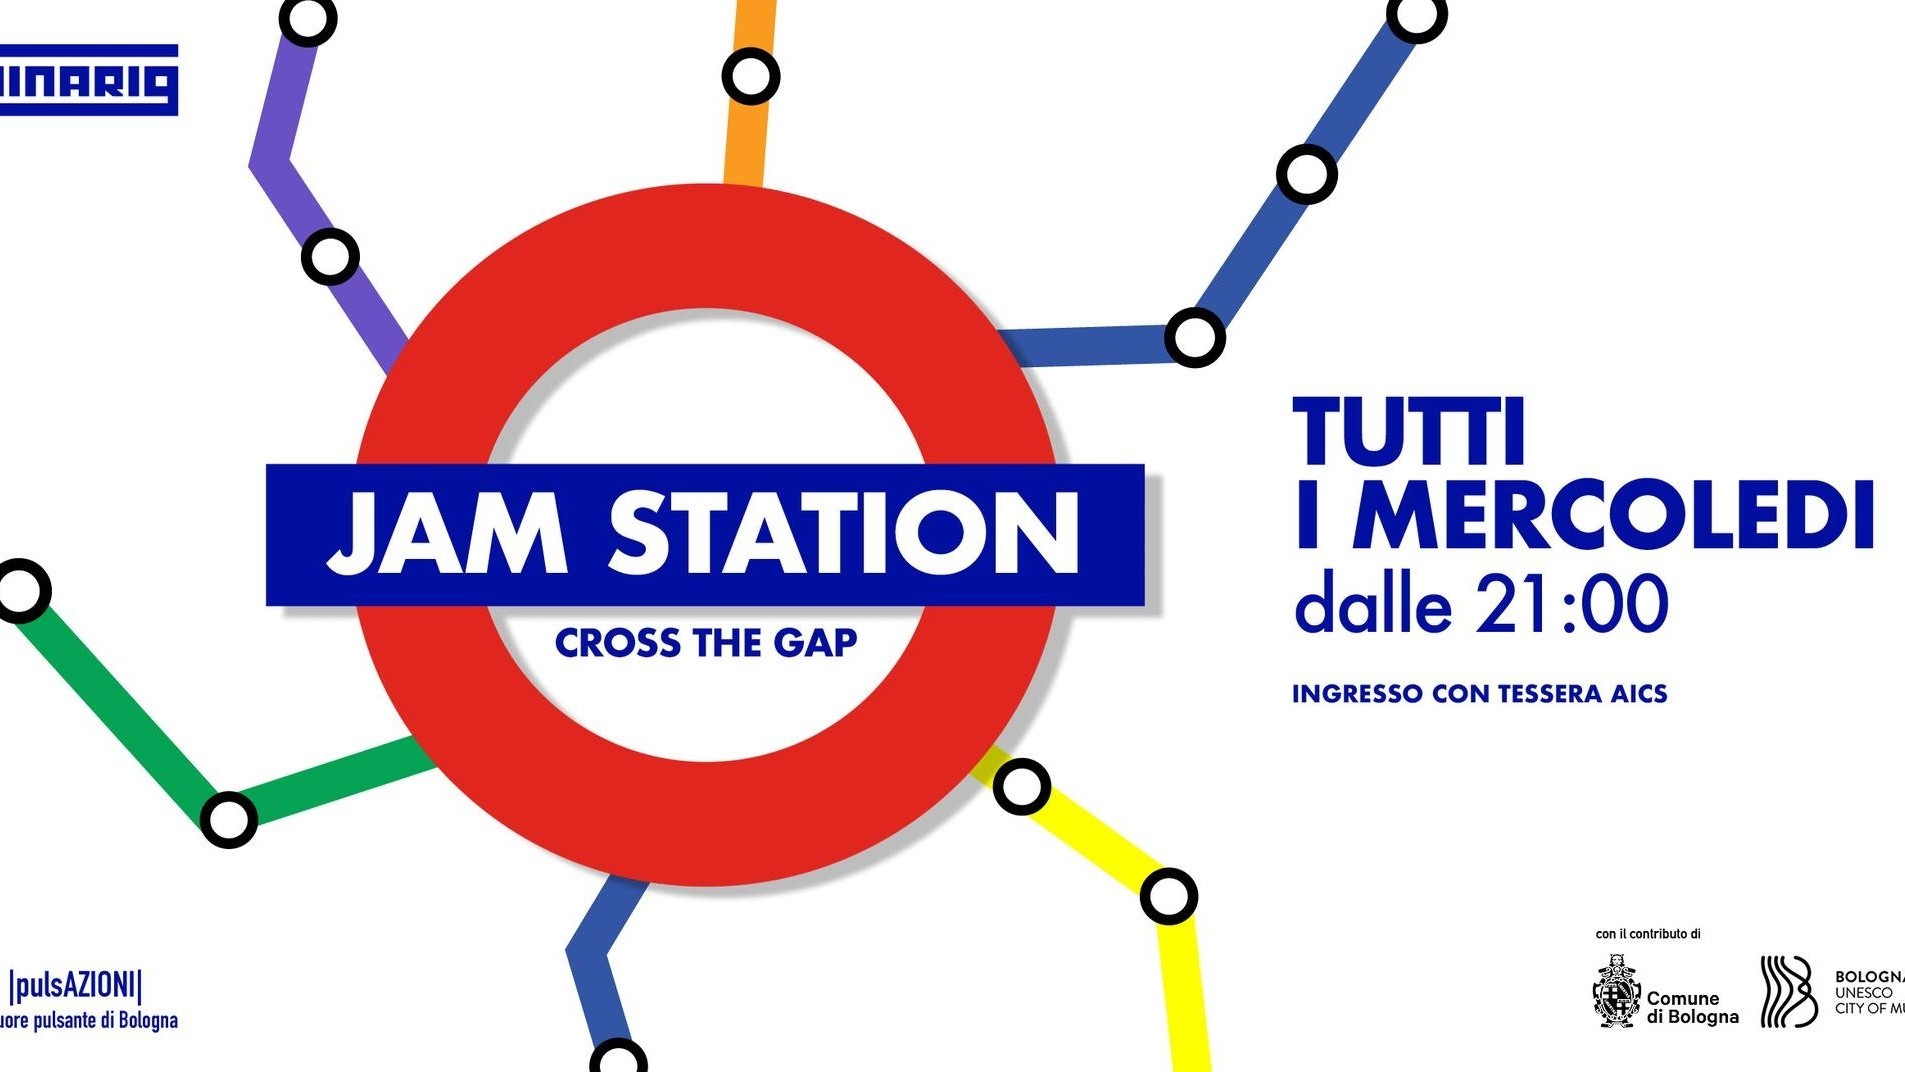 Jam station - Cross the gap